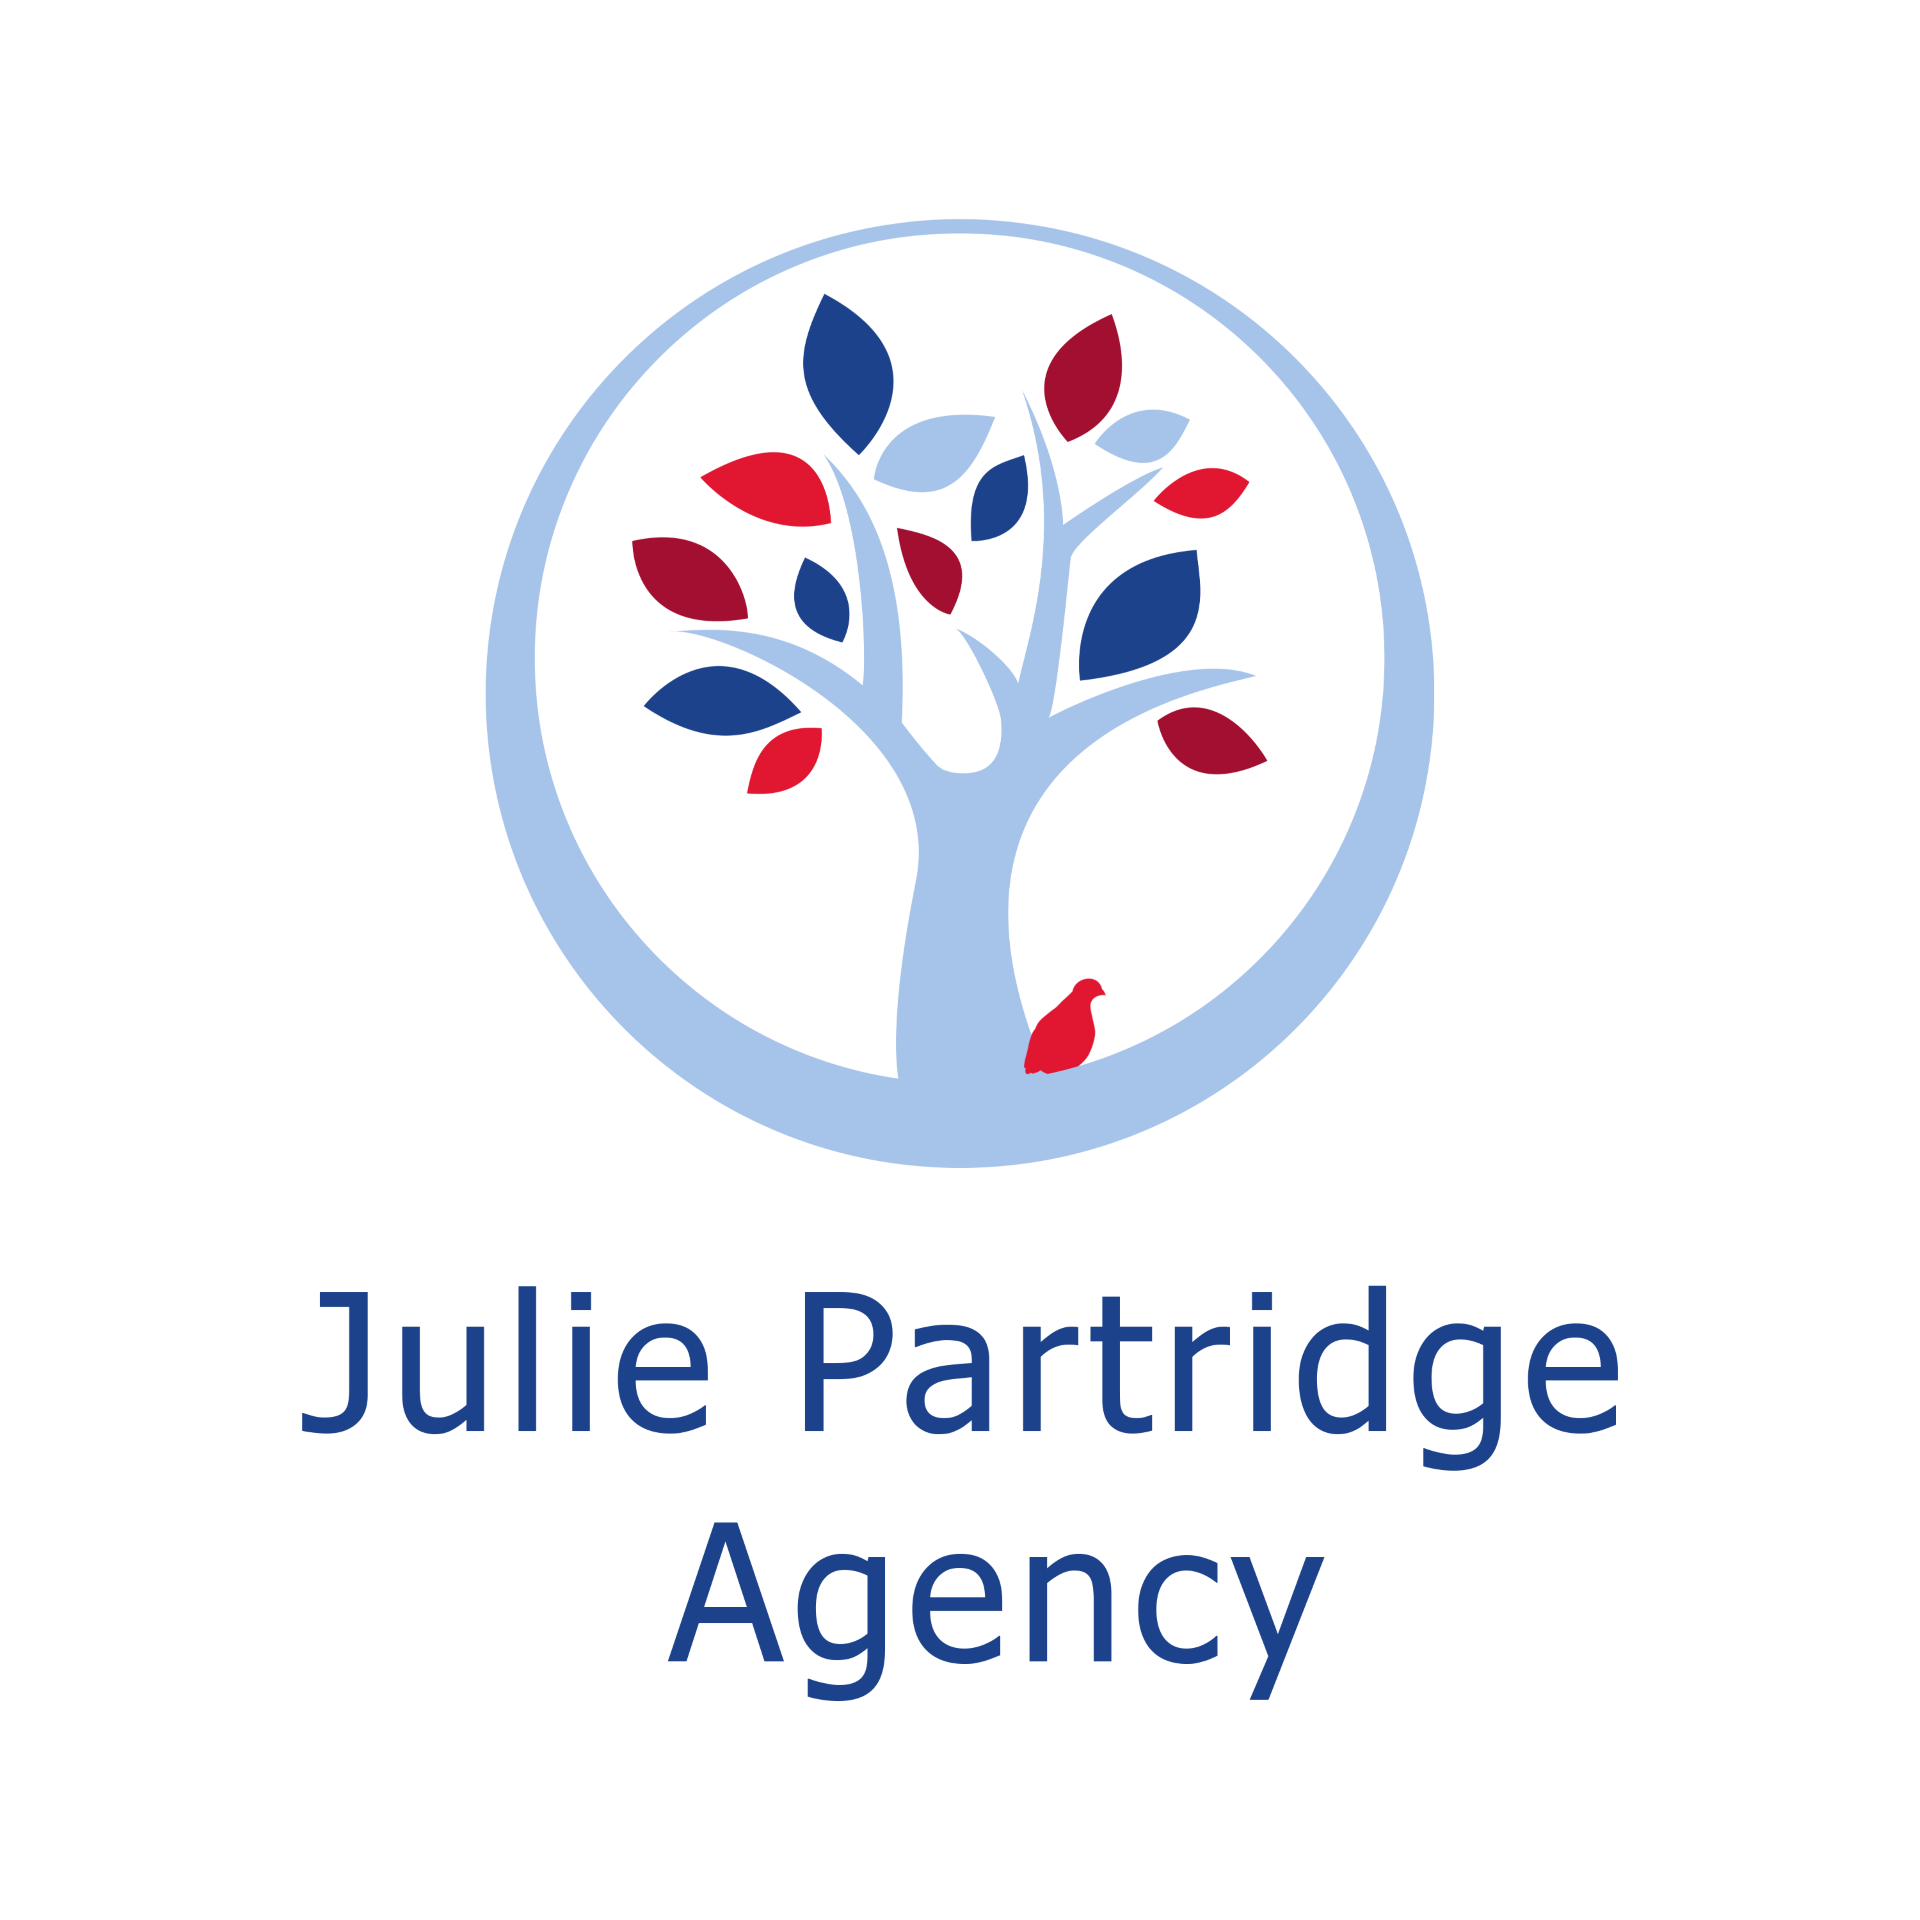 Julie Partridge Agency